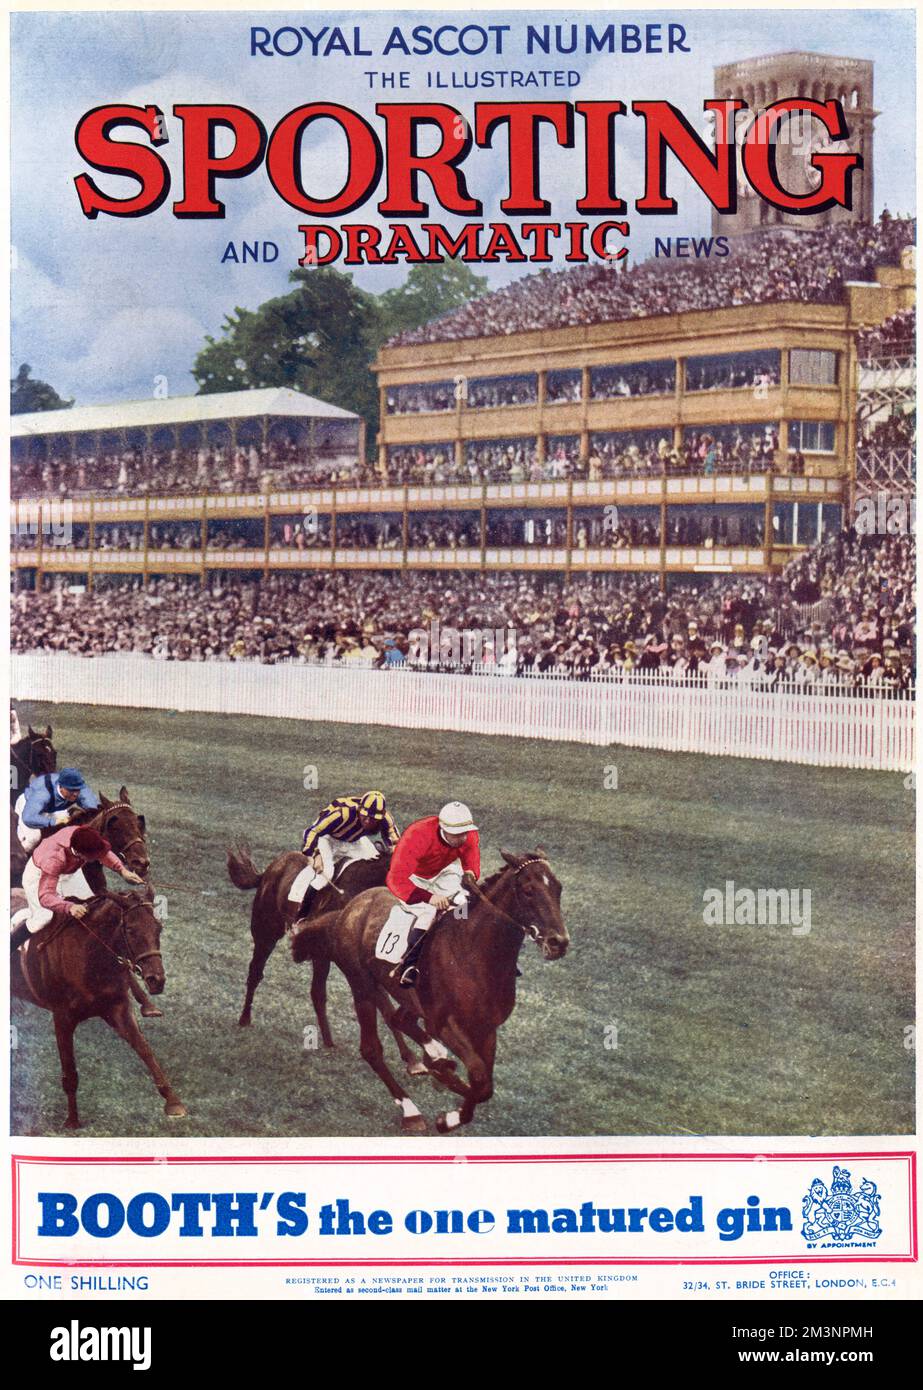 Couverture du numéro de l'Ascot royale des nouvelles sportives et dramatiques illustrées, 12th juin 1936. Date: 1936 Banque D'Images